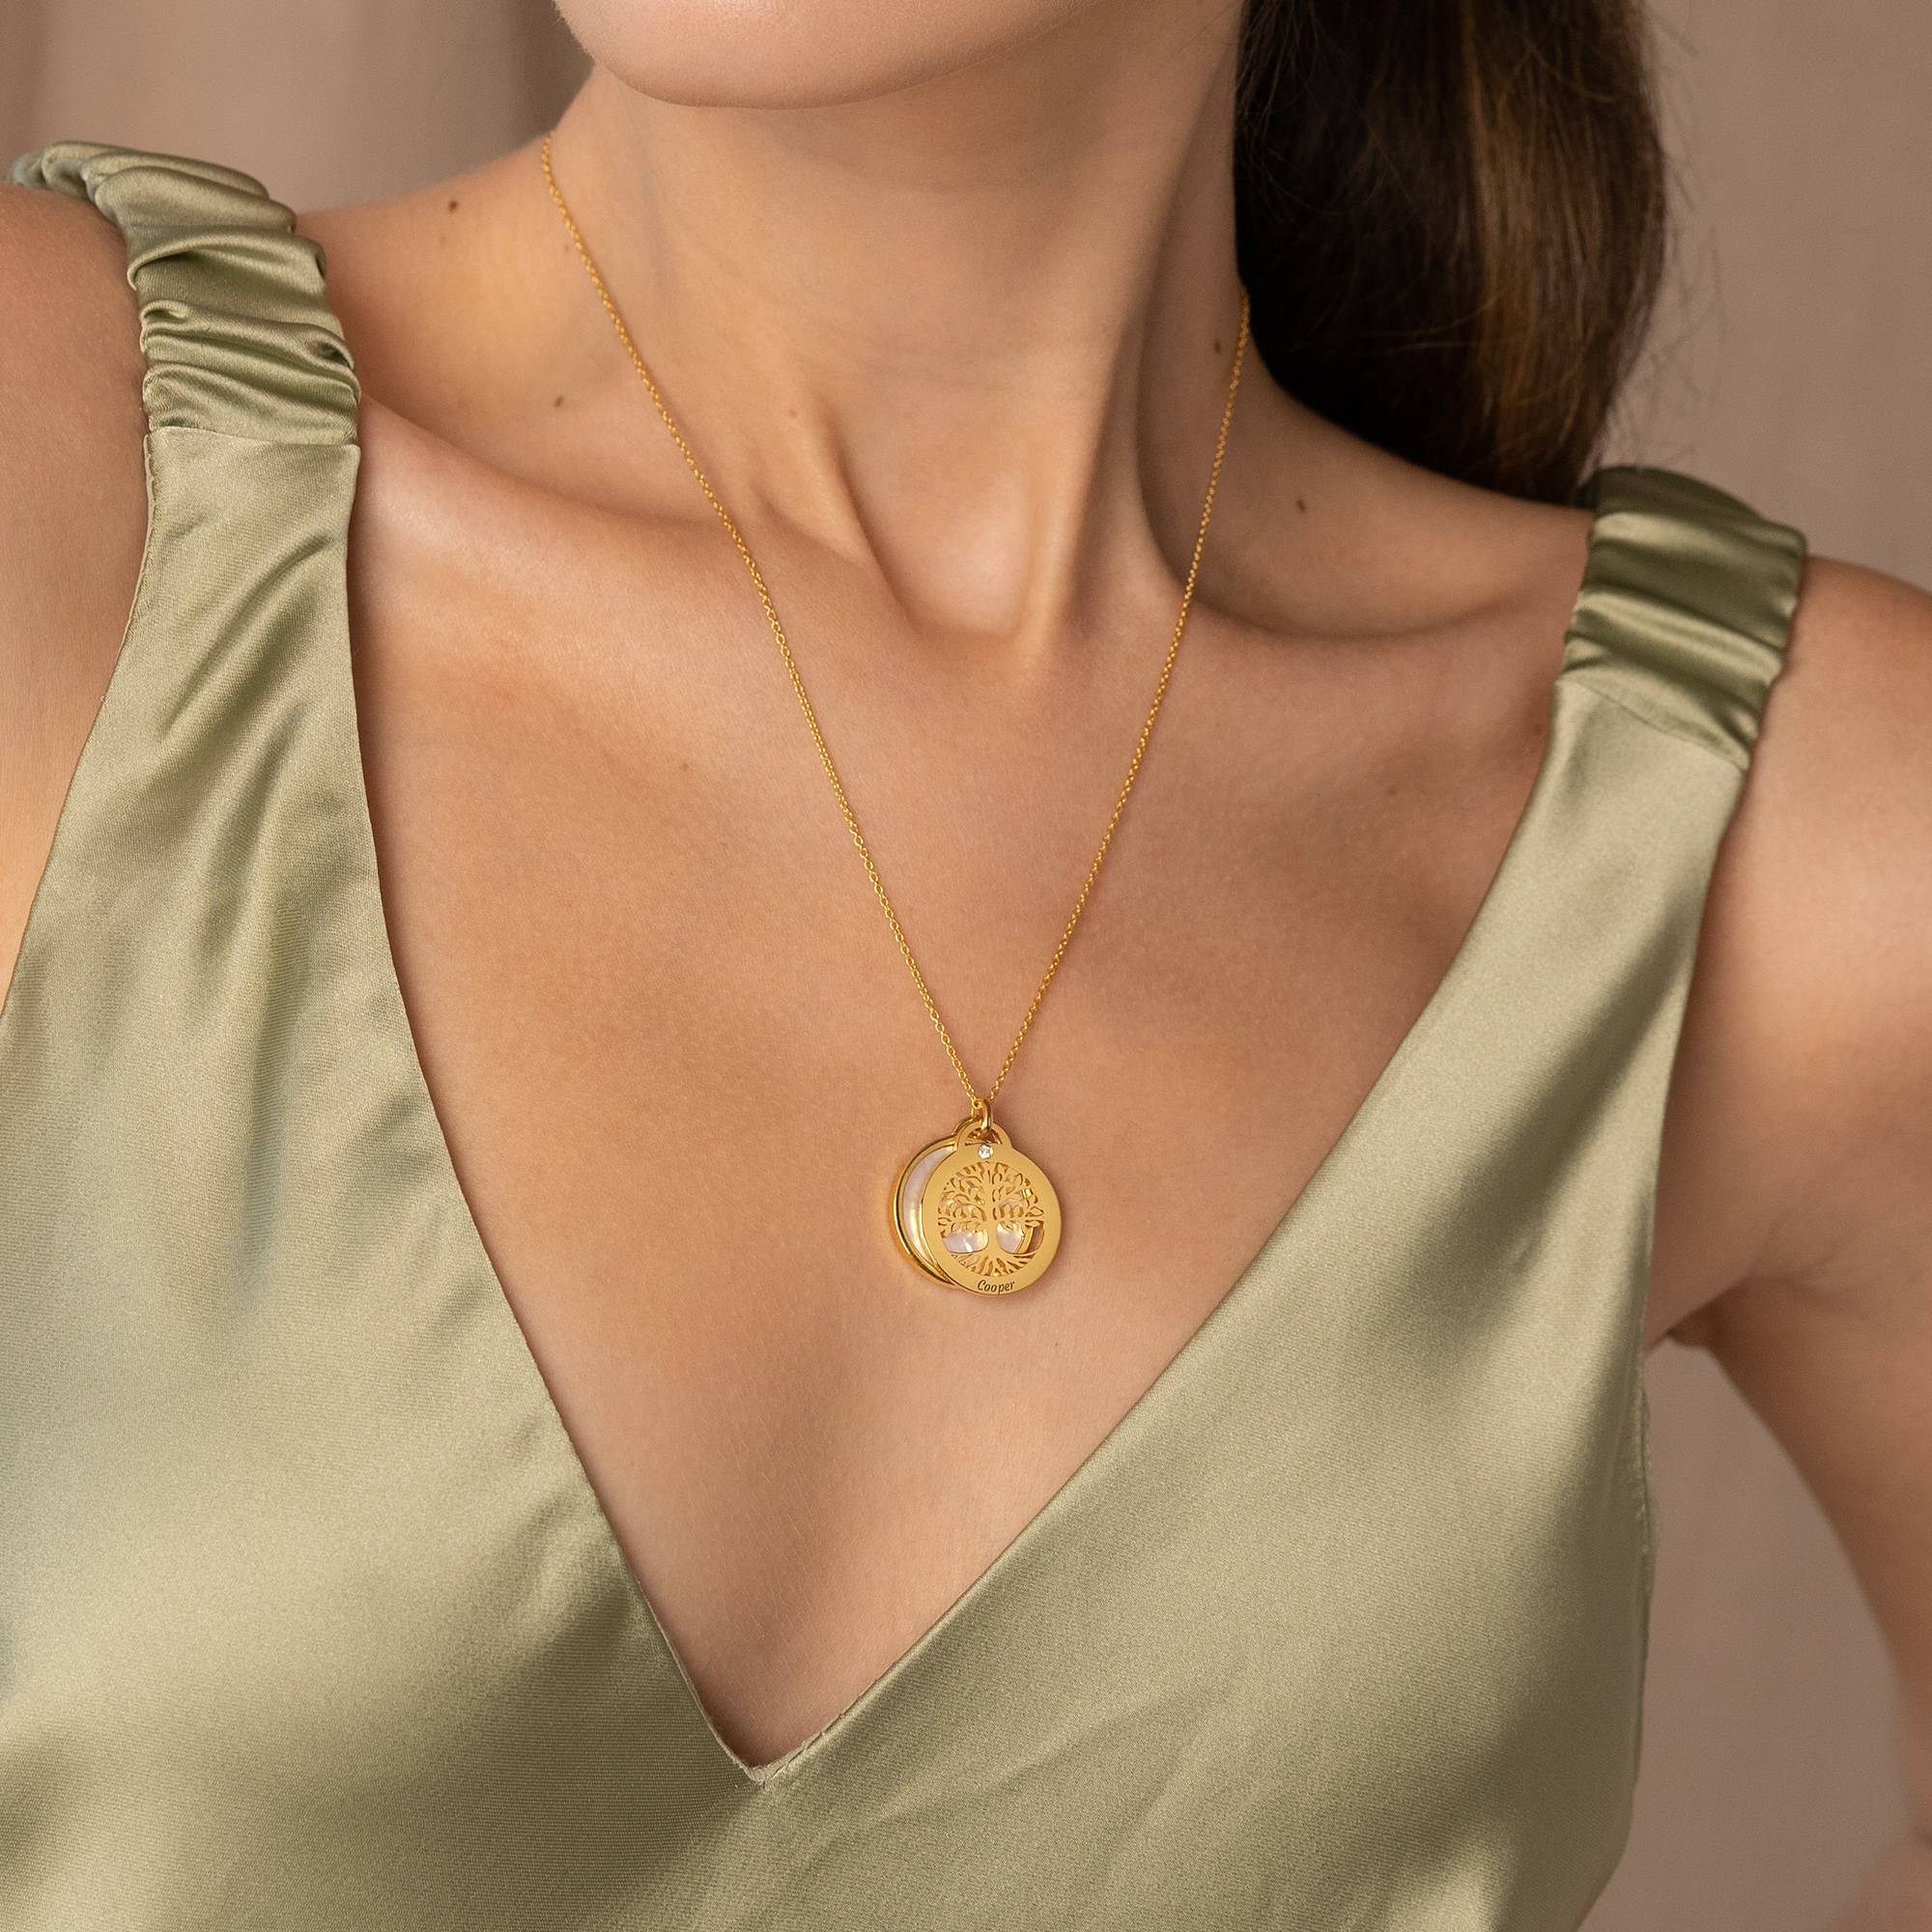 Collar Árbol Genealógico Personalizado con piedra semipreciosa y diamantes en baño de oro de 18 quilates-4 foto de producto